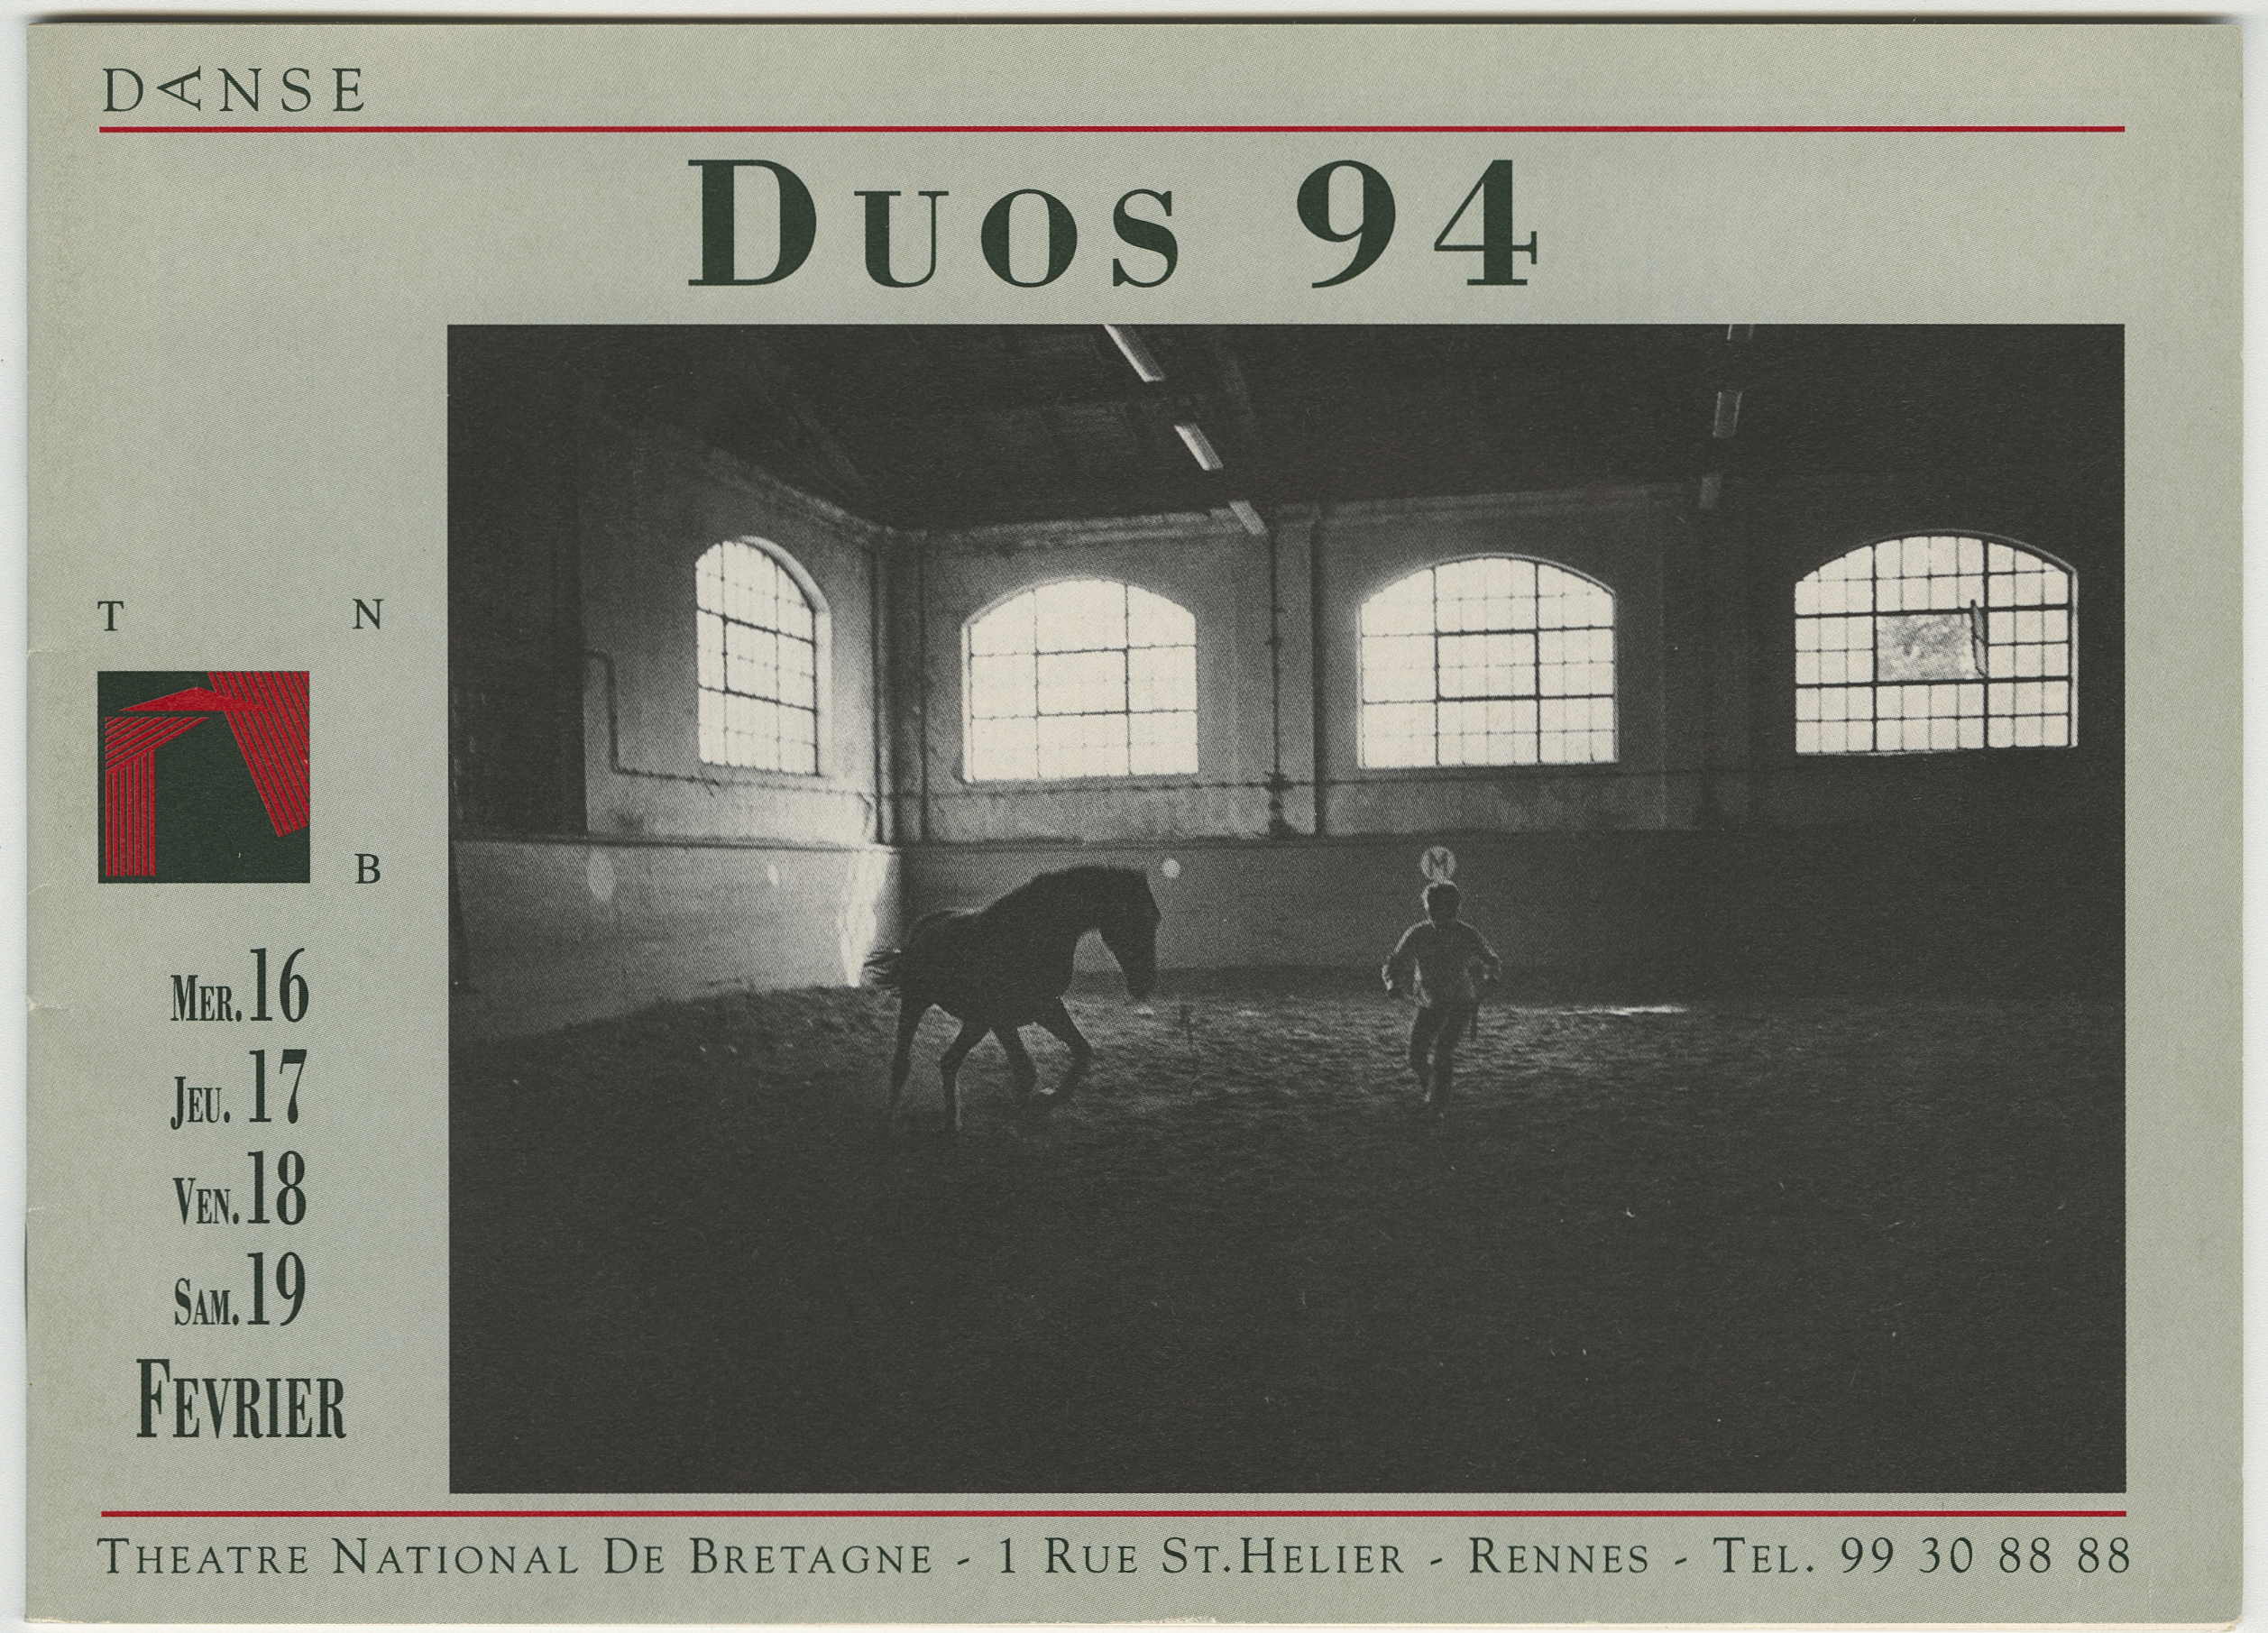 Extrait du programme du Théâtre national de Bretagne pour le festival Duos 94, février 1994